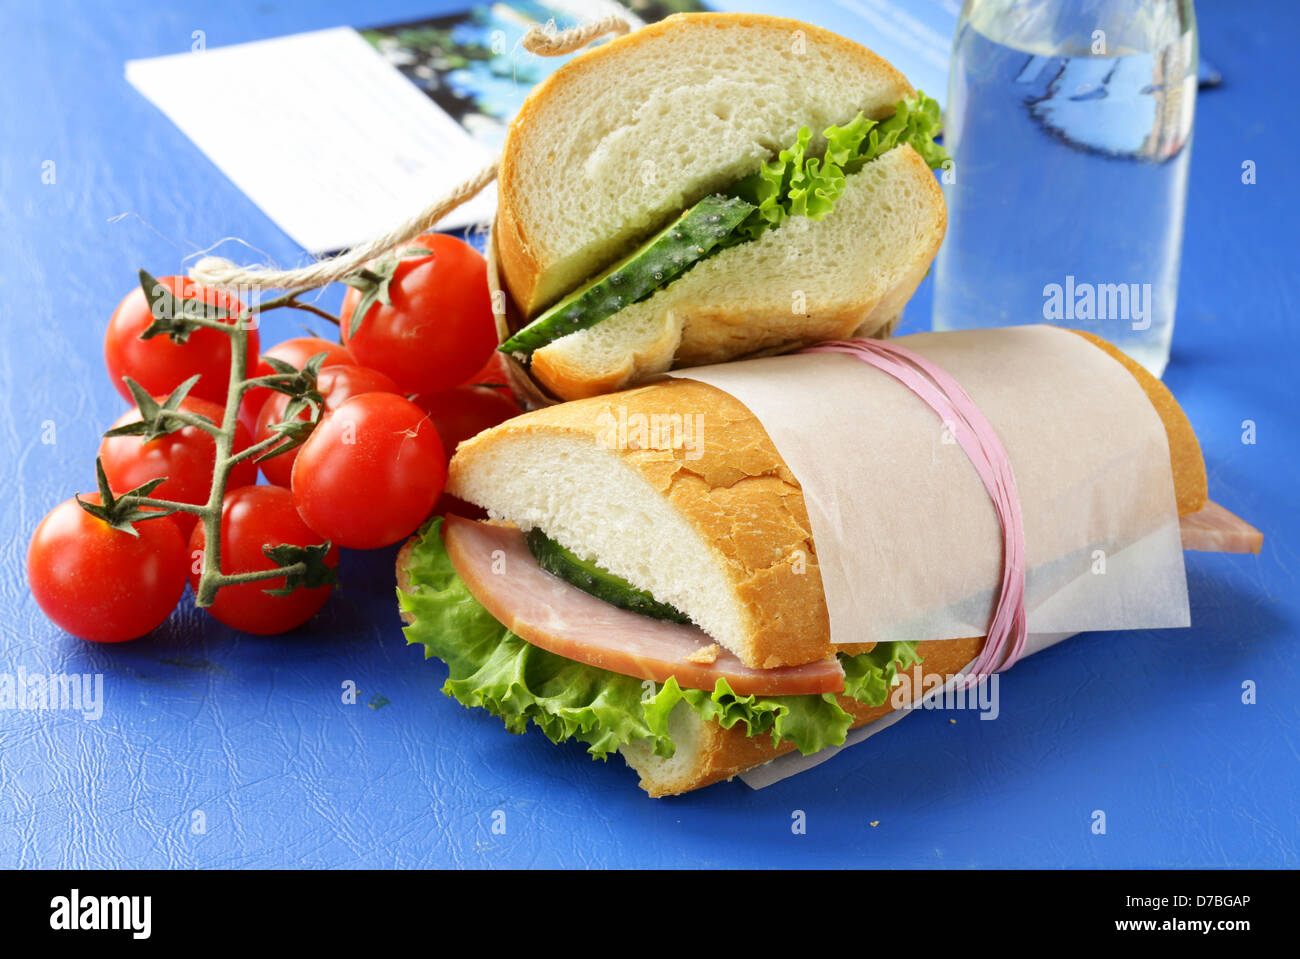 Snack-sandwiches (panini) avec des légumes et du jambon Banque D'Images